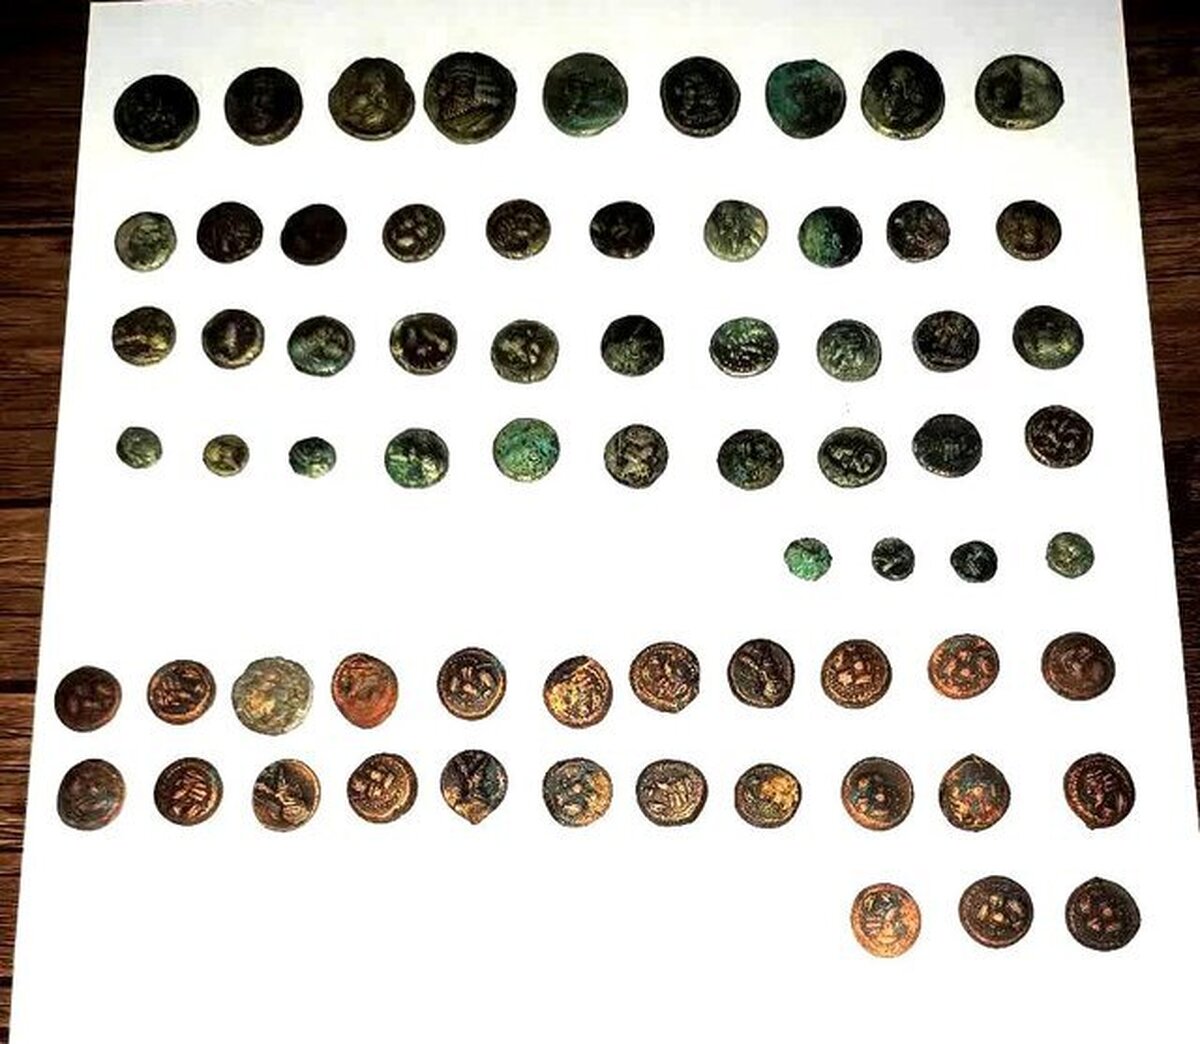 ۶۸ سکه دوره اشکانی در شهرستان فسا کشف شد